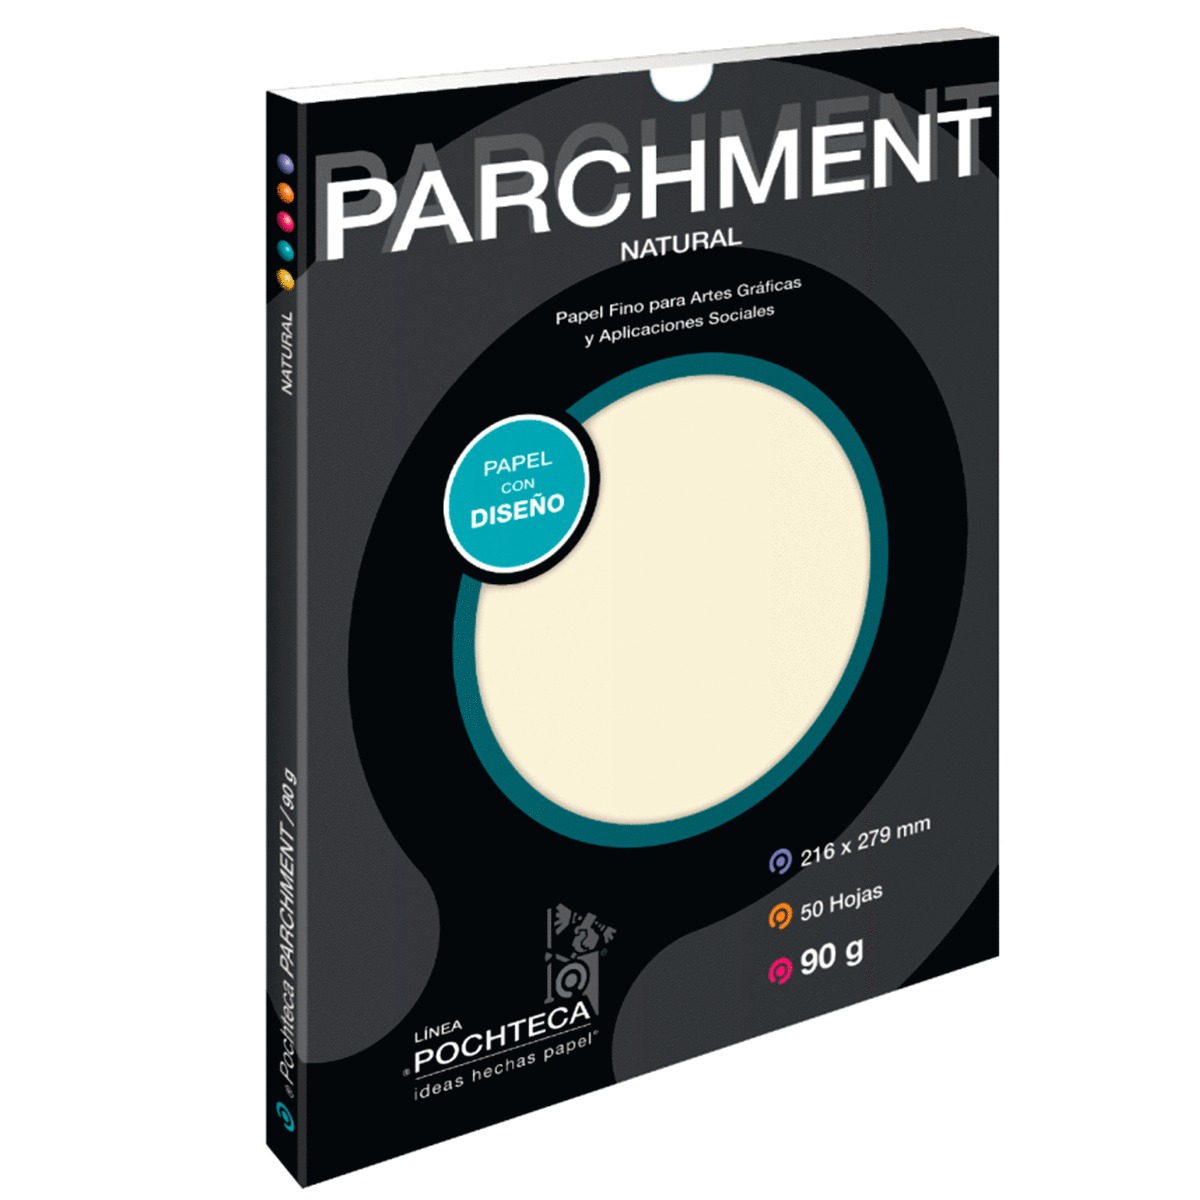 Papel con Diseño Pochteca Parchment Natural / 50 hojas / Carta / Beige / 90 gr